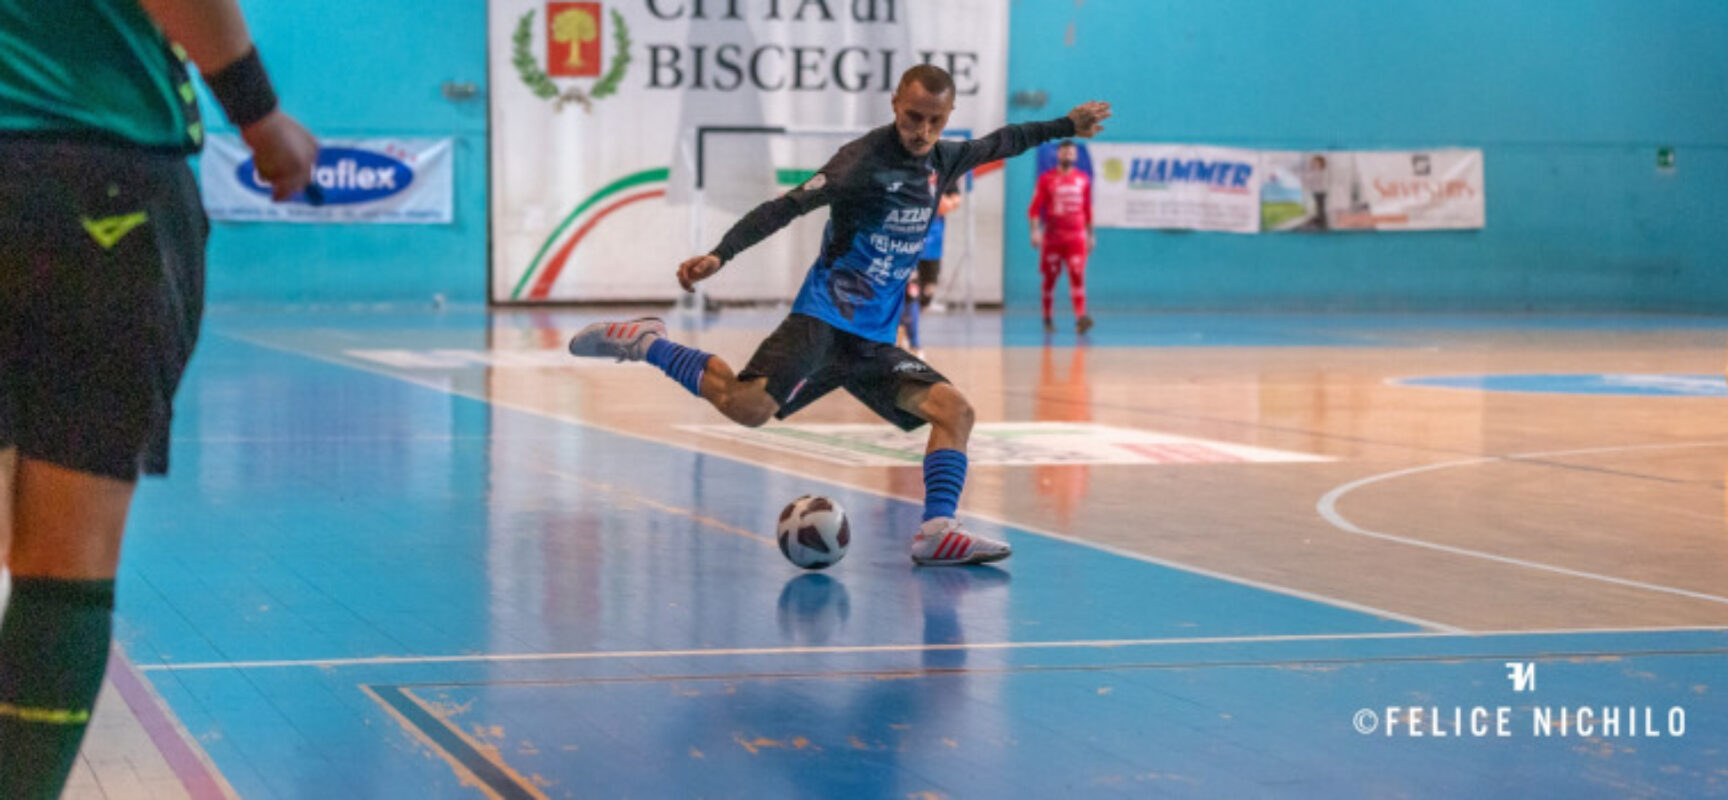 Futsal: Diaz vince in rimonta, pari Cinco, Nettuno ko / RISULTATI E CLASSIFICA